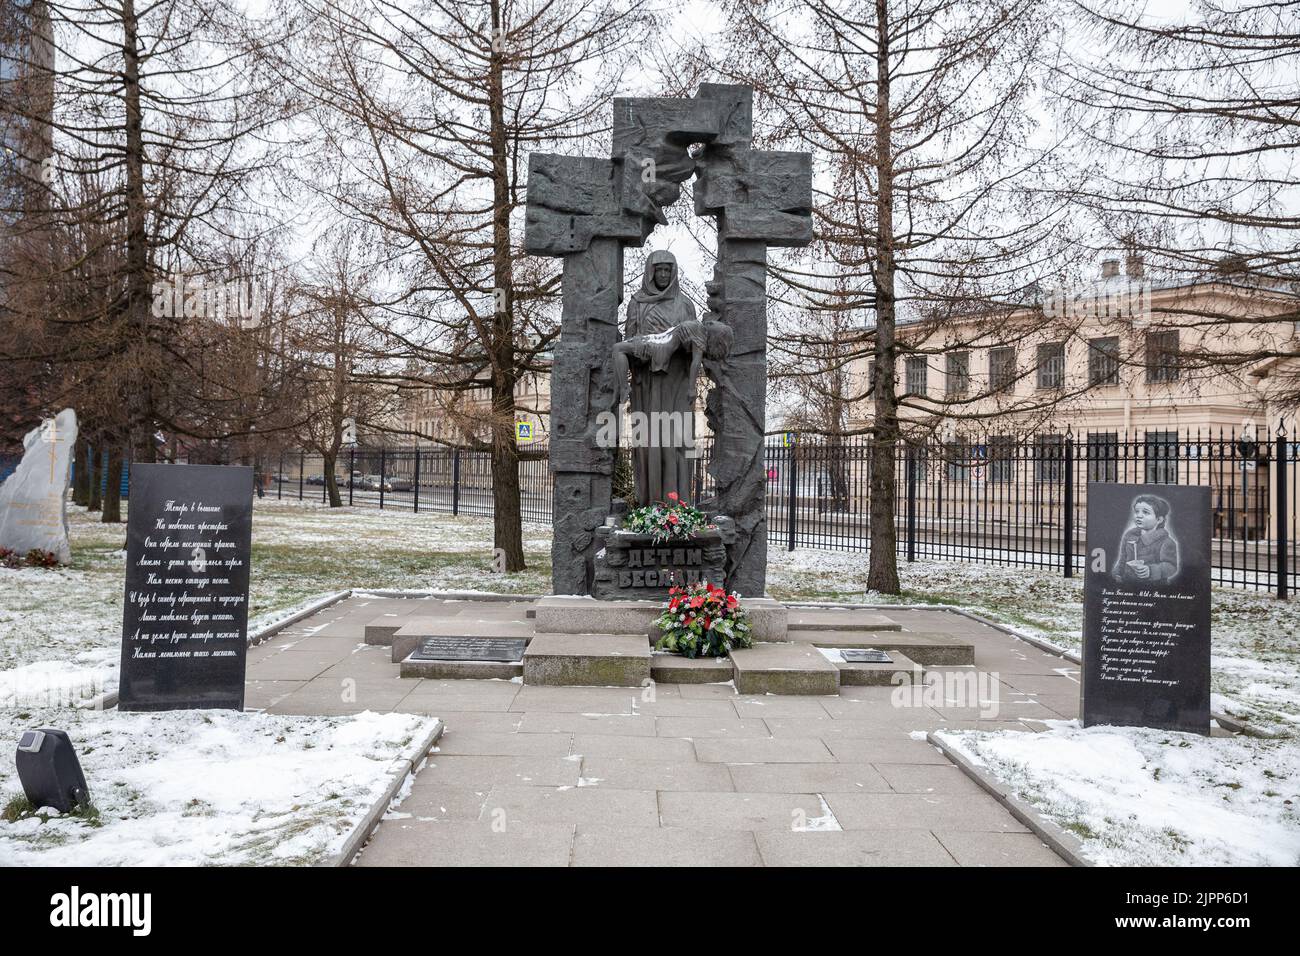 Saint-Pétersbourg, Russie - 01 février 2020 : monument aux enfants de Beslan près de l'église de l'Assomption à Saint-Pétersbourg Banque D'Images